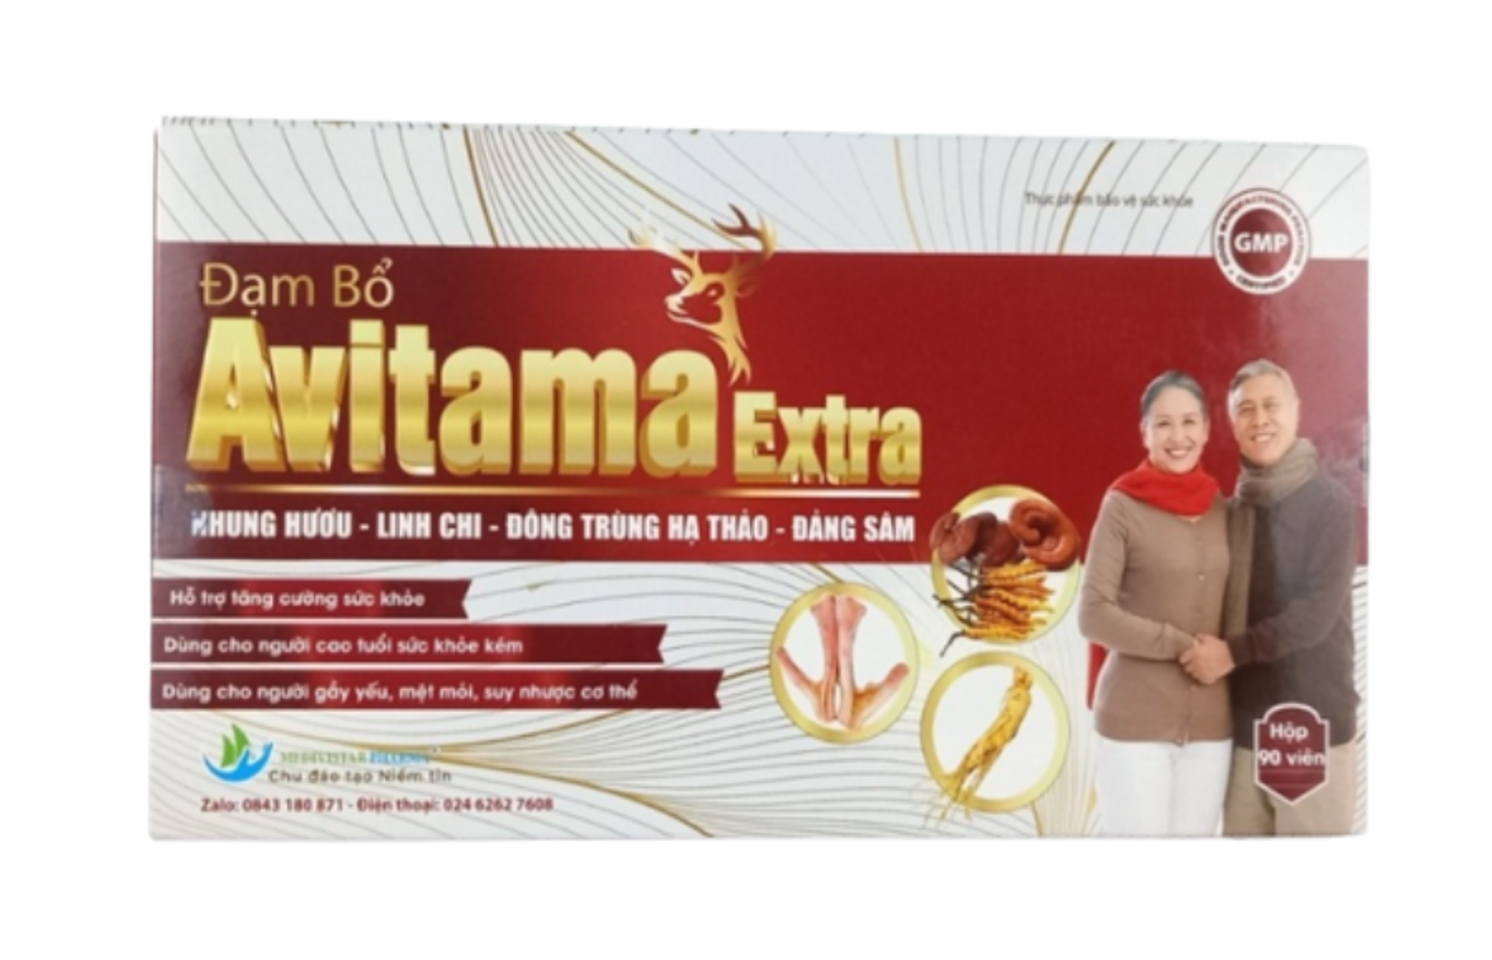 Viên uống Đạm Bổ Avitama Extra hỗ trợ tăng cường sức khỏe